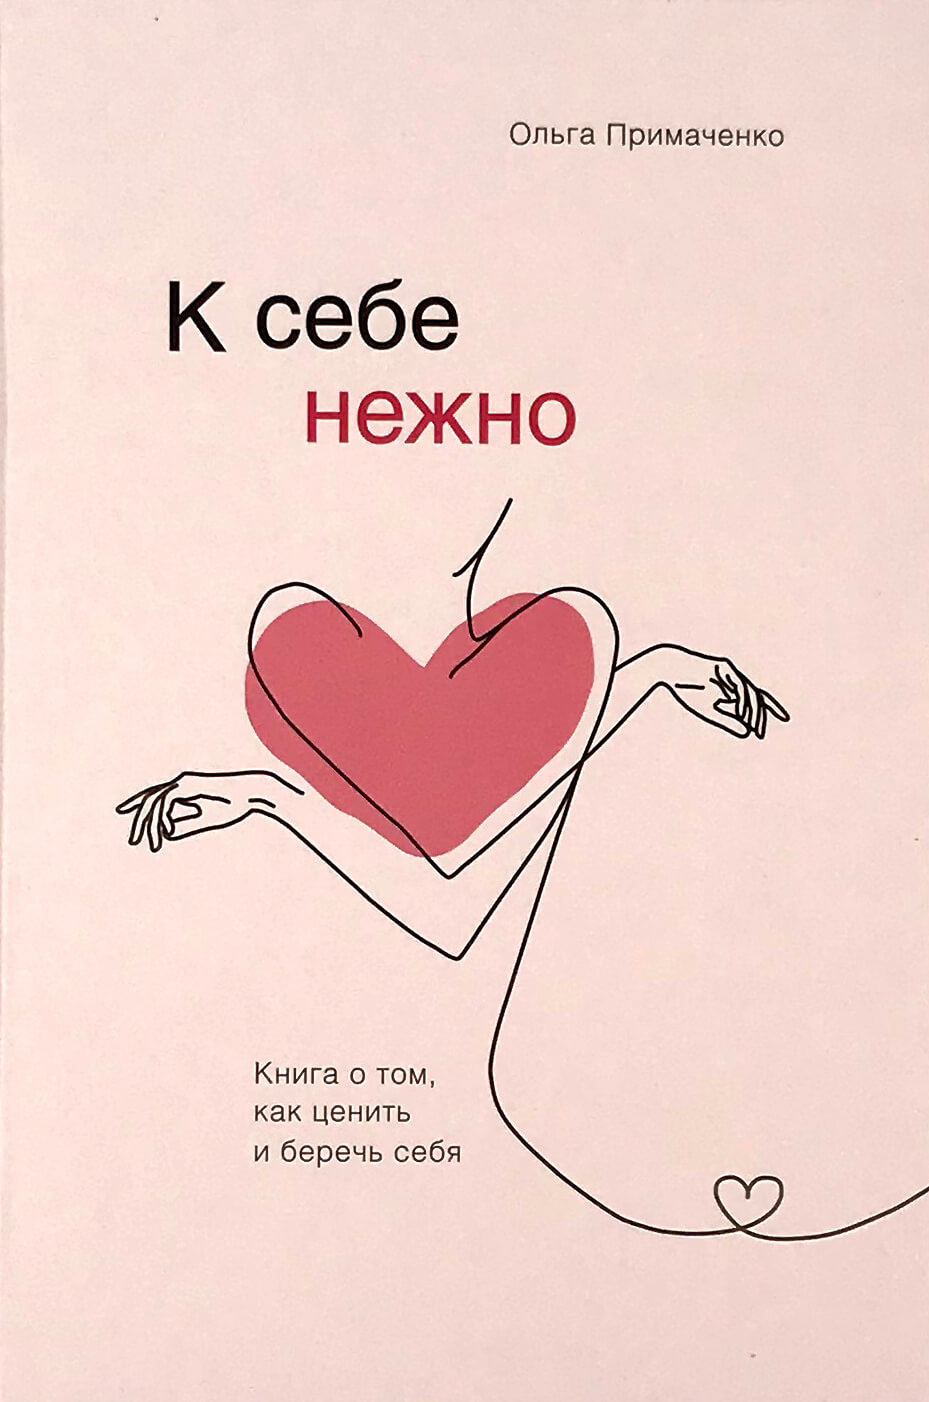 К себе нежно. Книга о том, как ценить и беречь себя. Автор — Ольга Примаченко. 